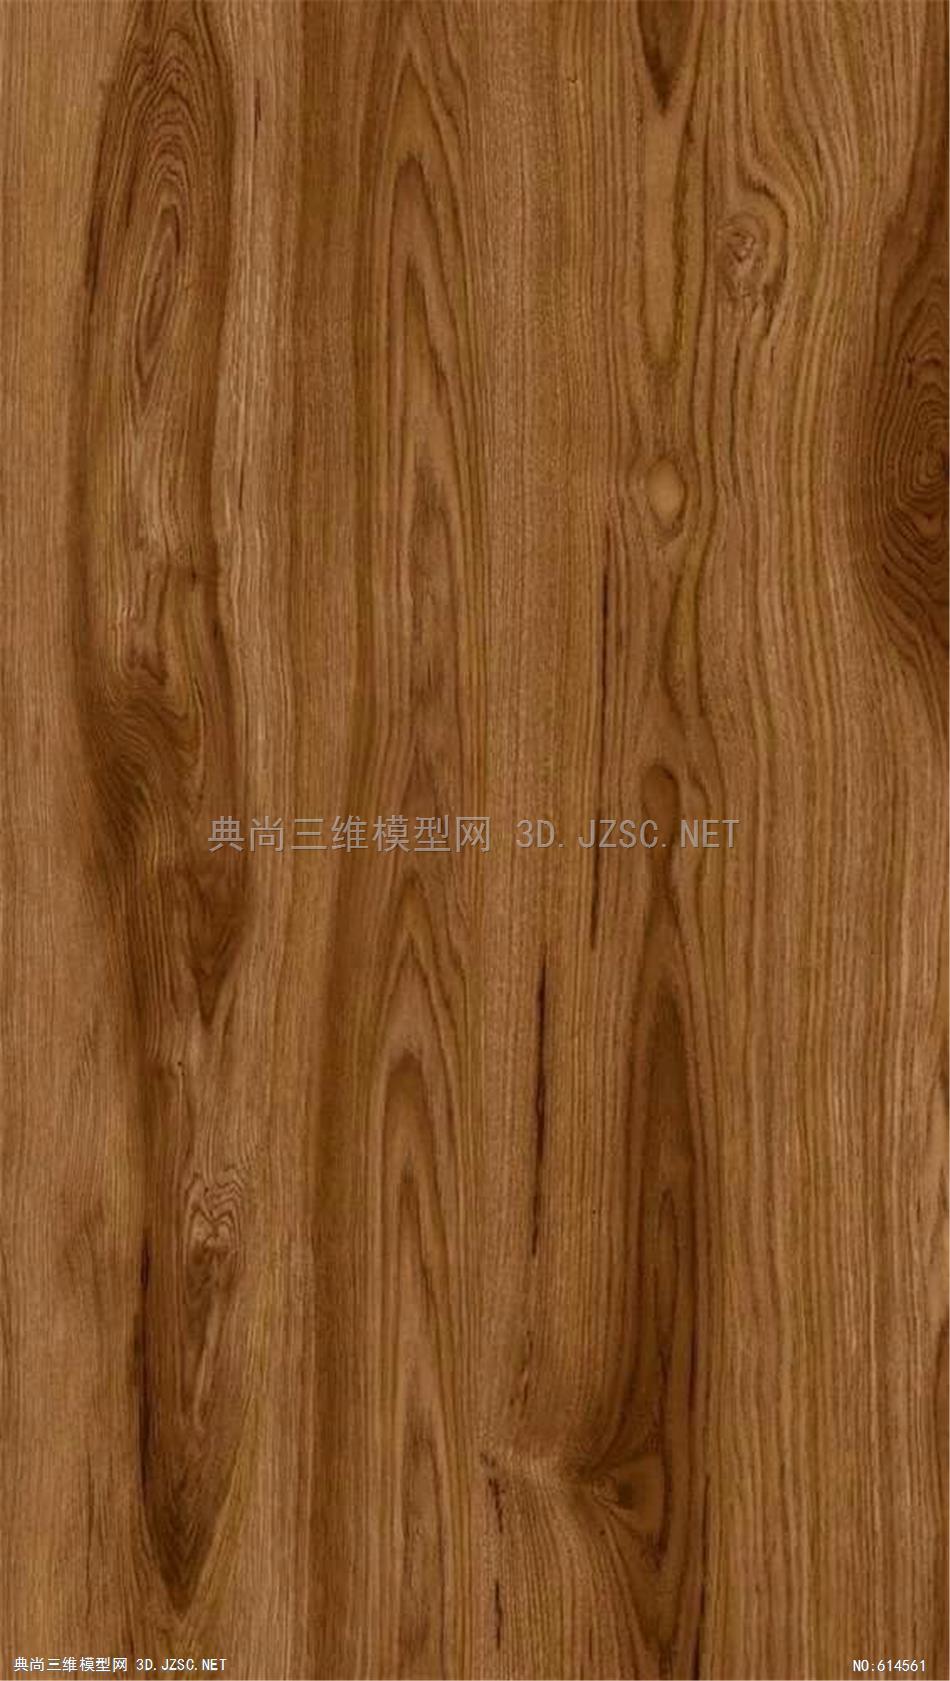 木饰面 木纹 木材  高清材质贴图 (345)